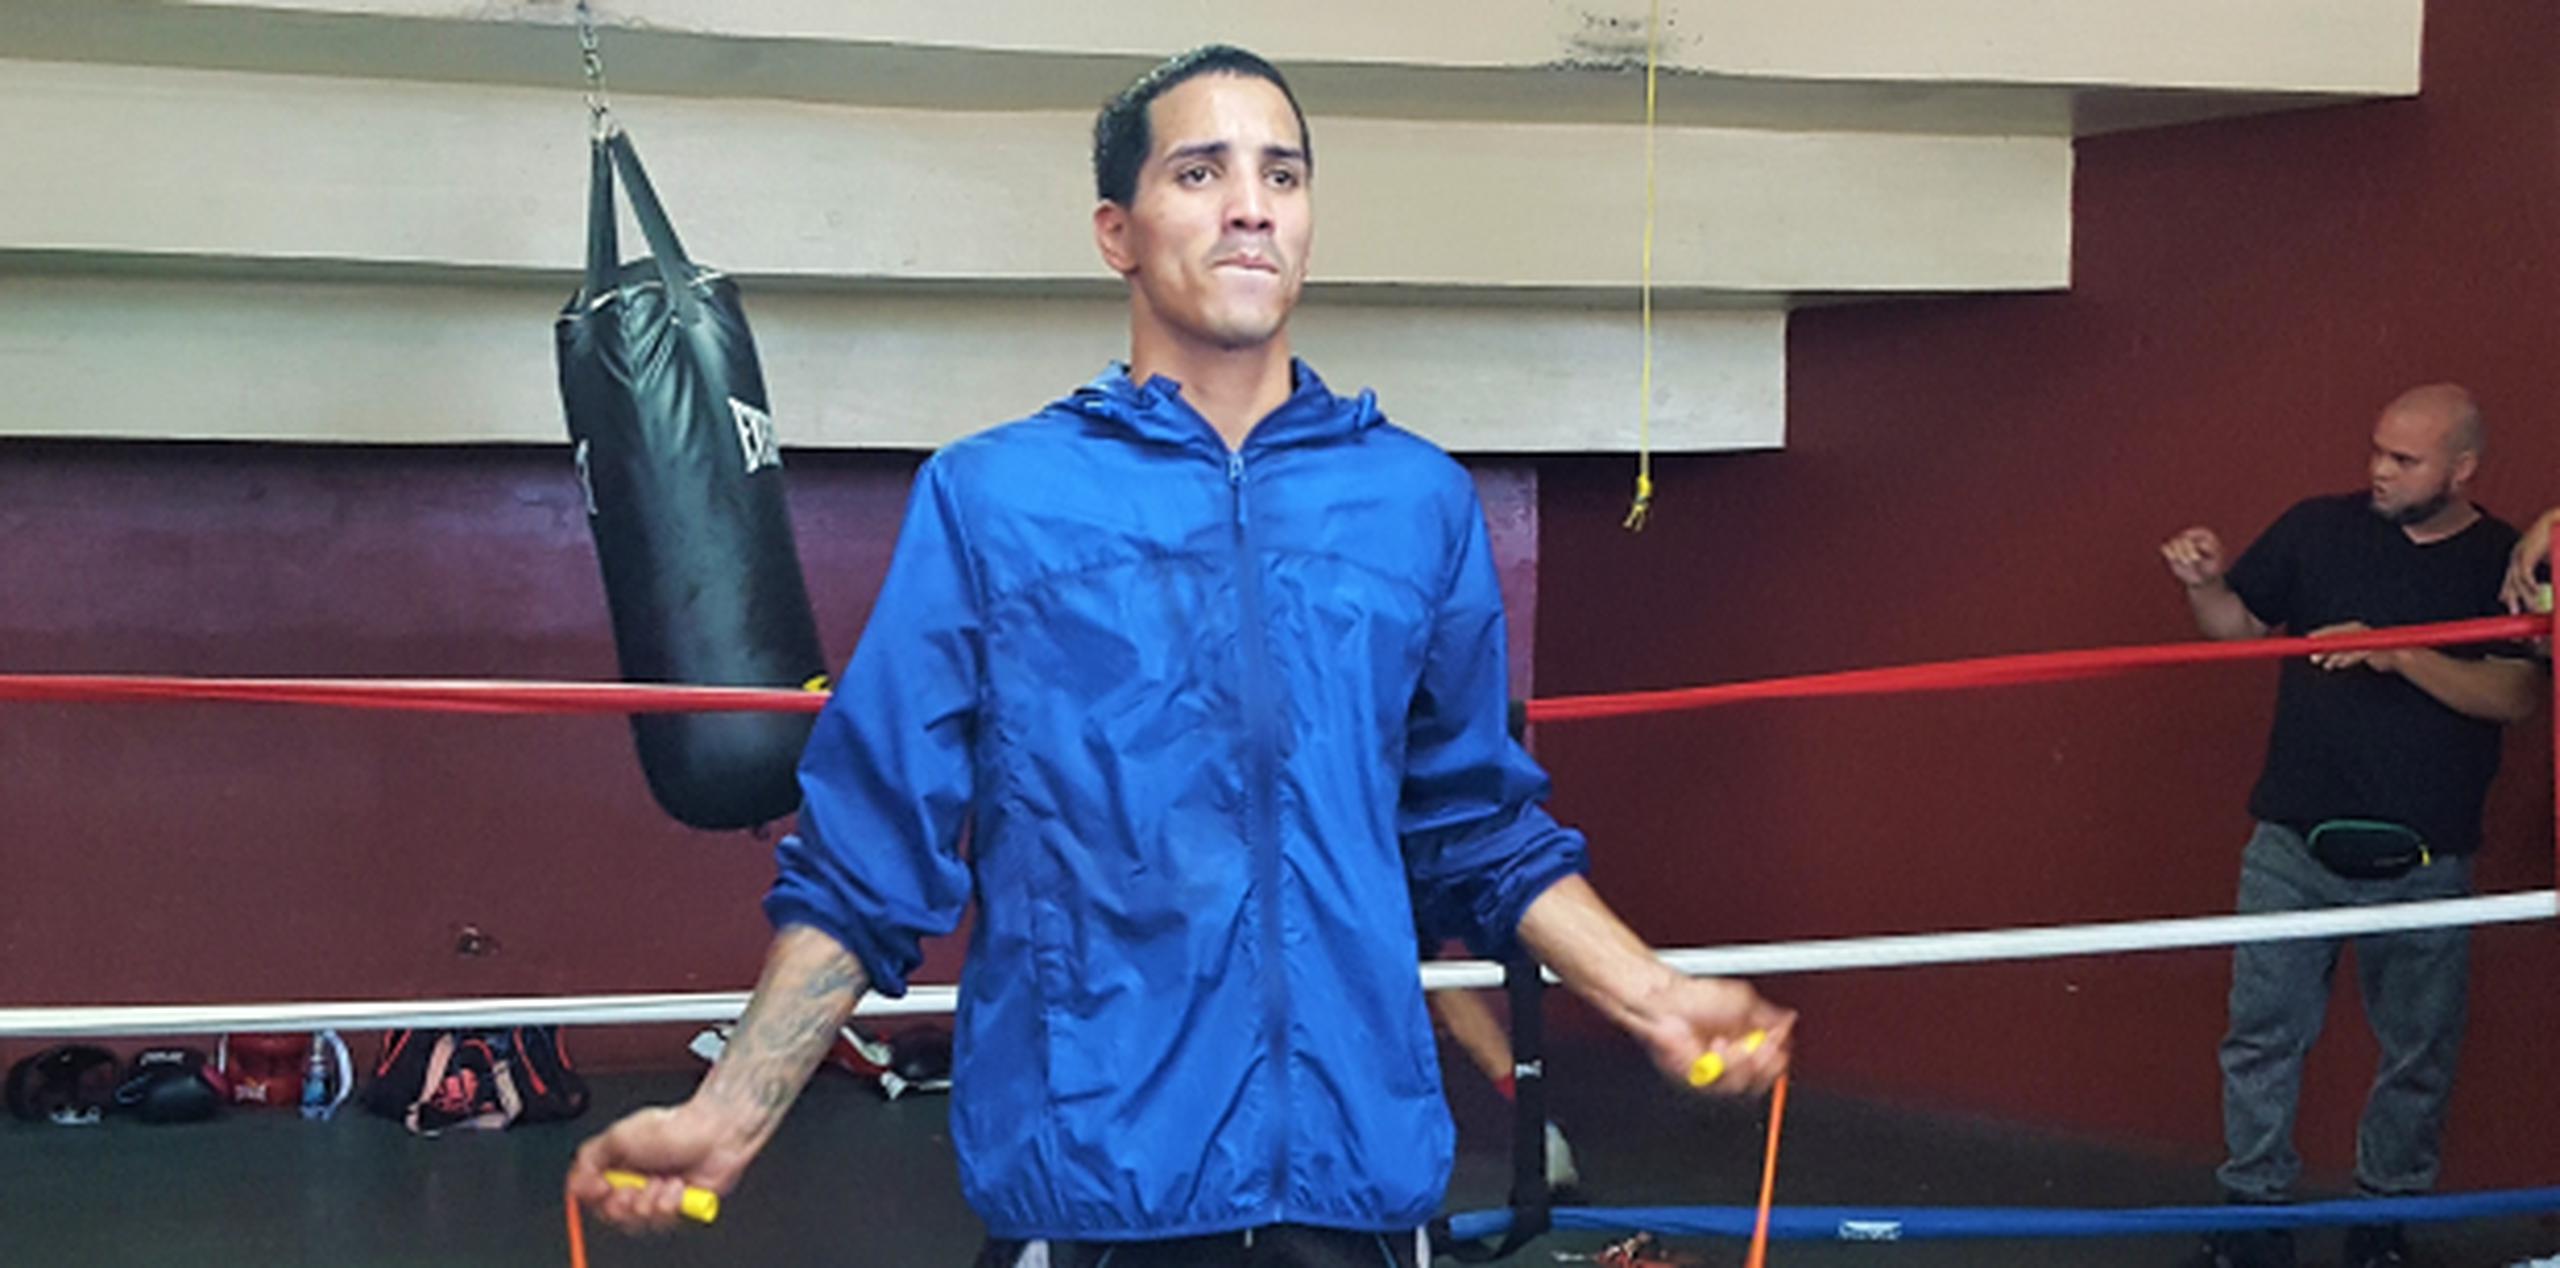 El duelo Rodríguez-Butler será por la correa mundial vacante peso gallo (118 libras) de la Federación Internacional de Boxeo (FIB). (Suministrada/Esdel Palermo/Fresh Productions Boxing)